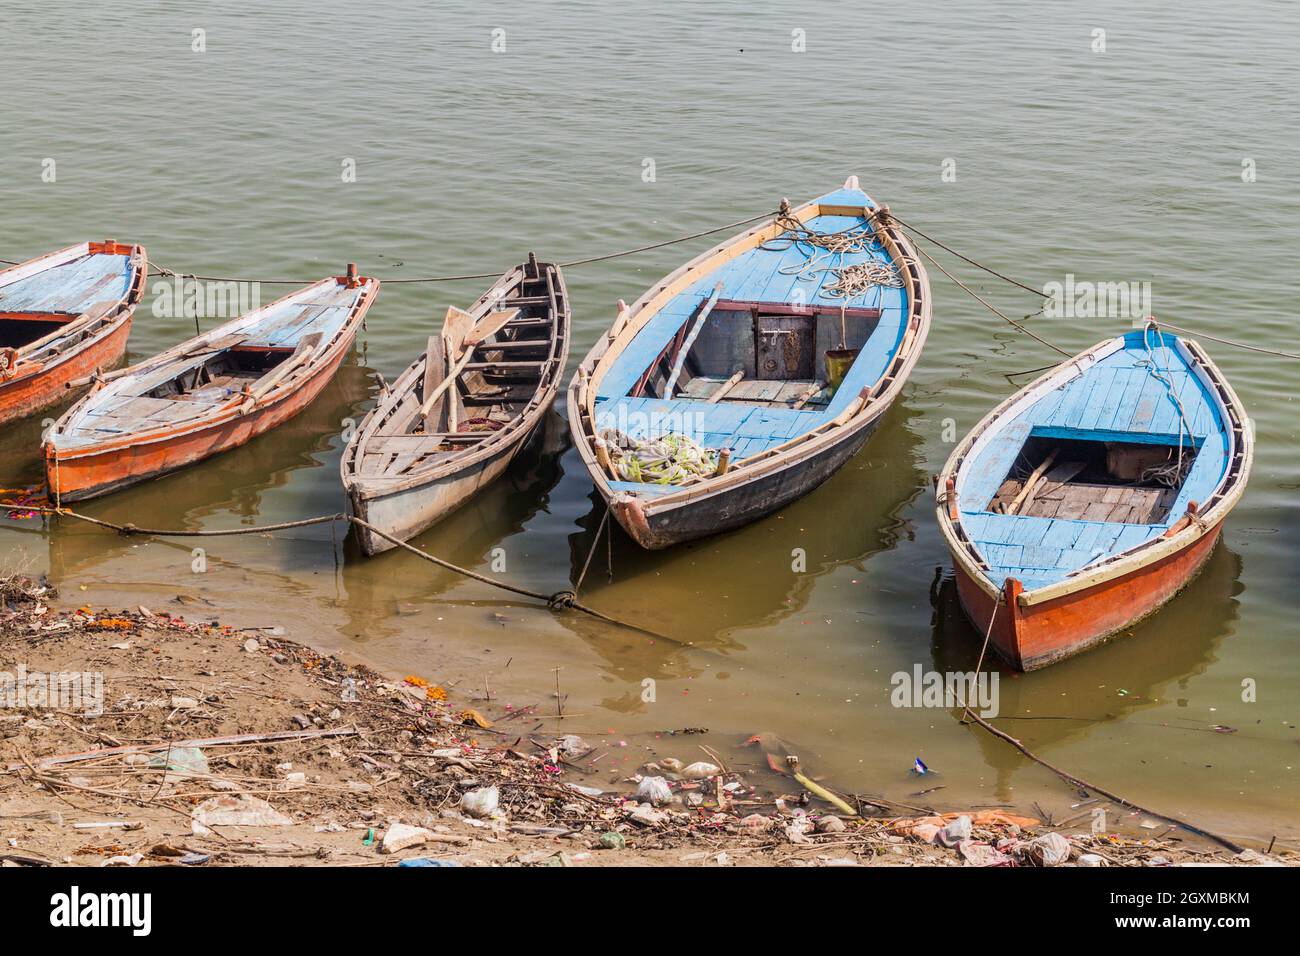 Small boats at river Ganges in Varanasi, India Stock Photo